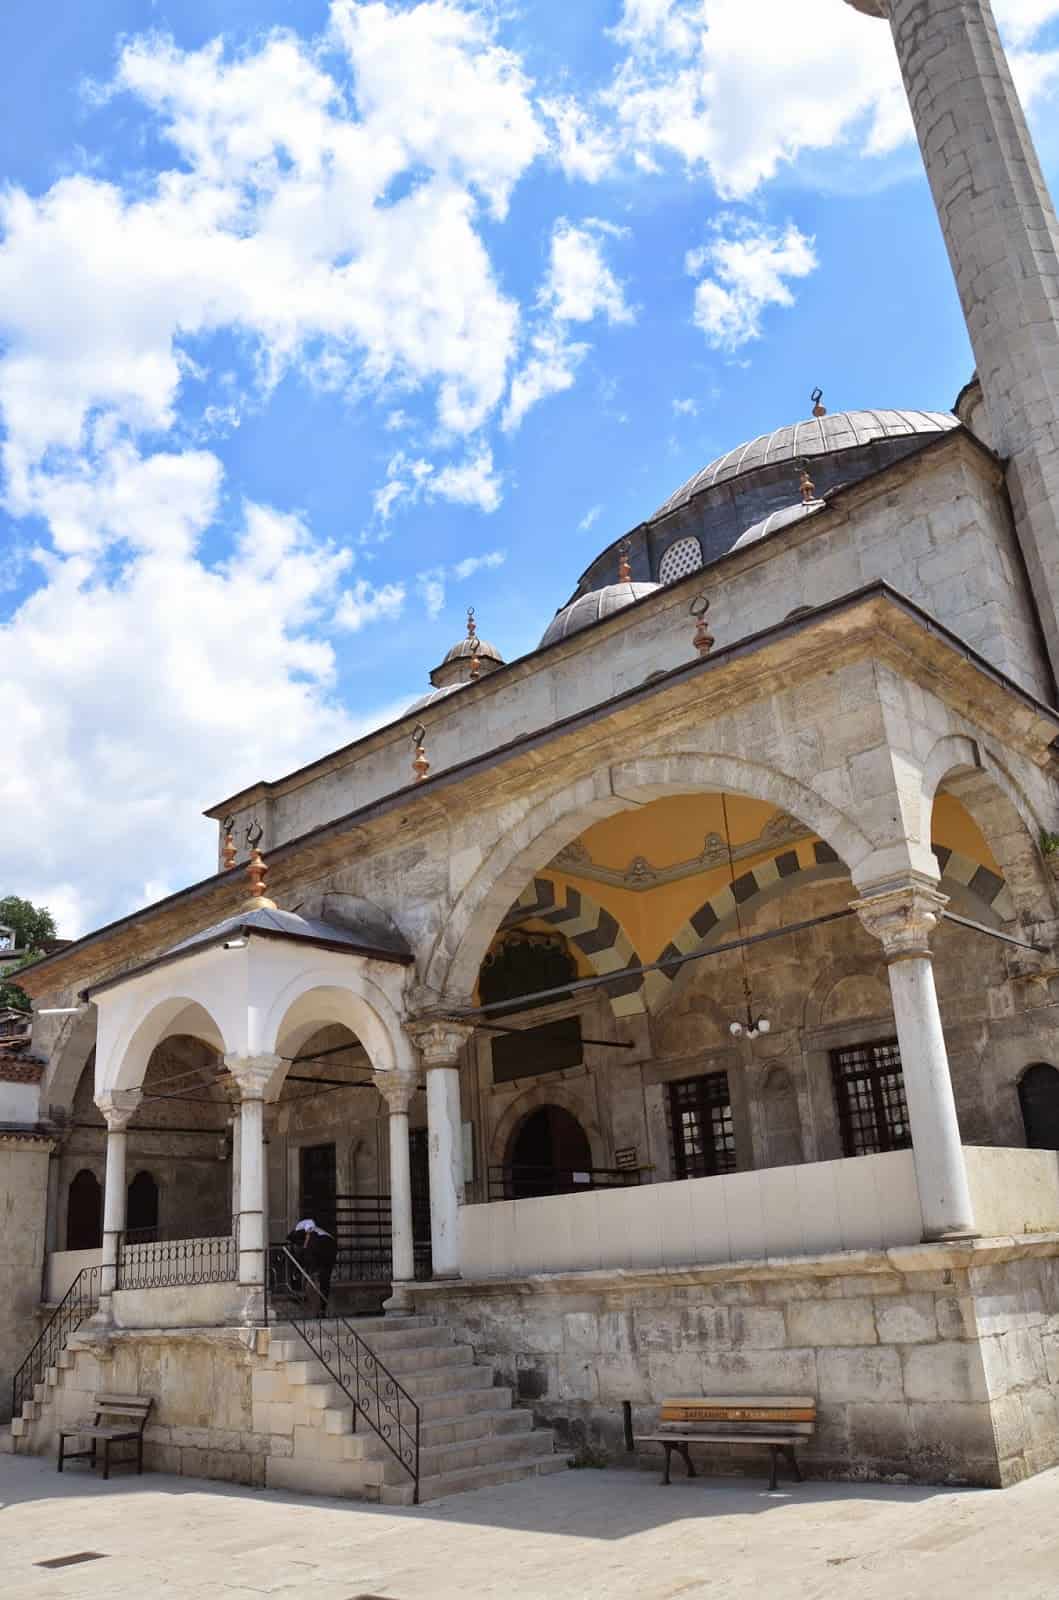 İzzet Mehmed Pasha Mosque in Safranbolu, Turkey